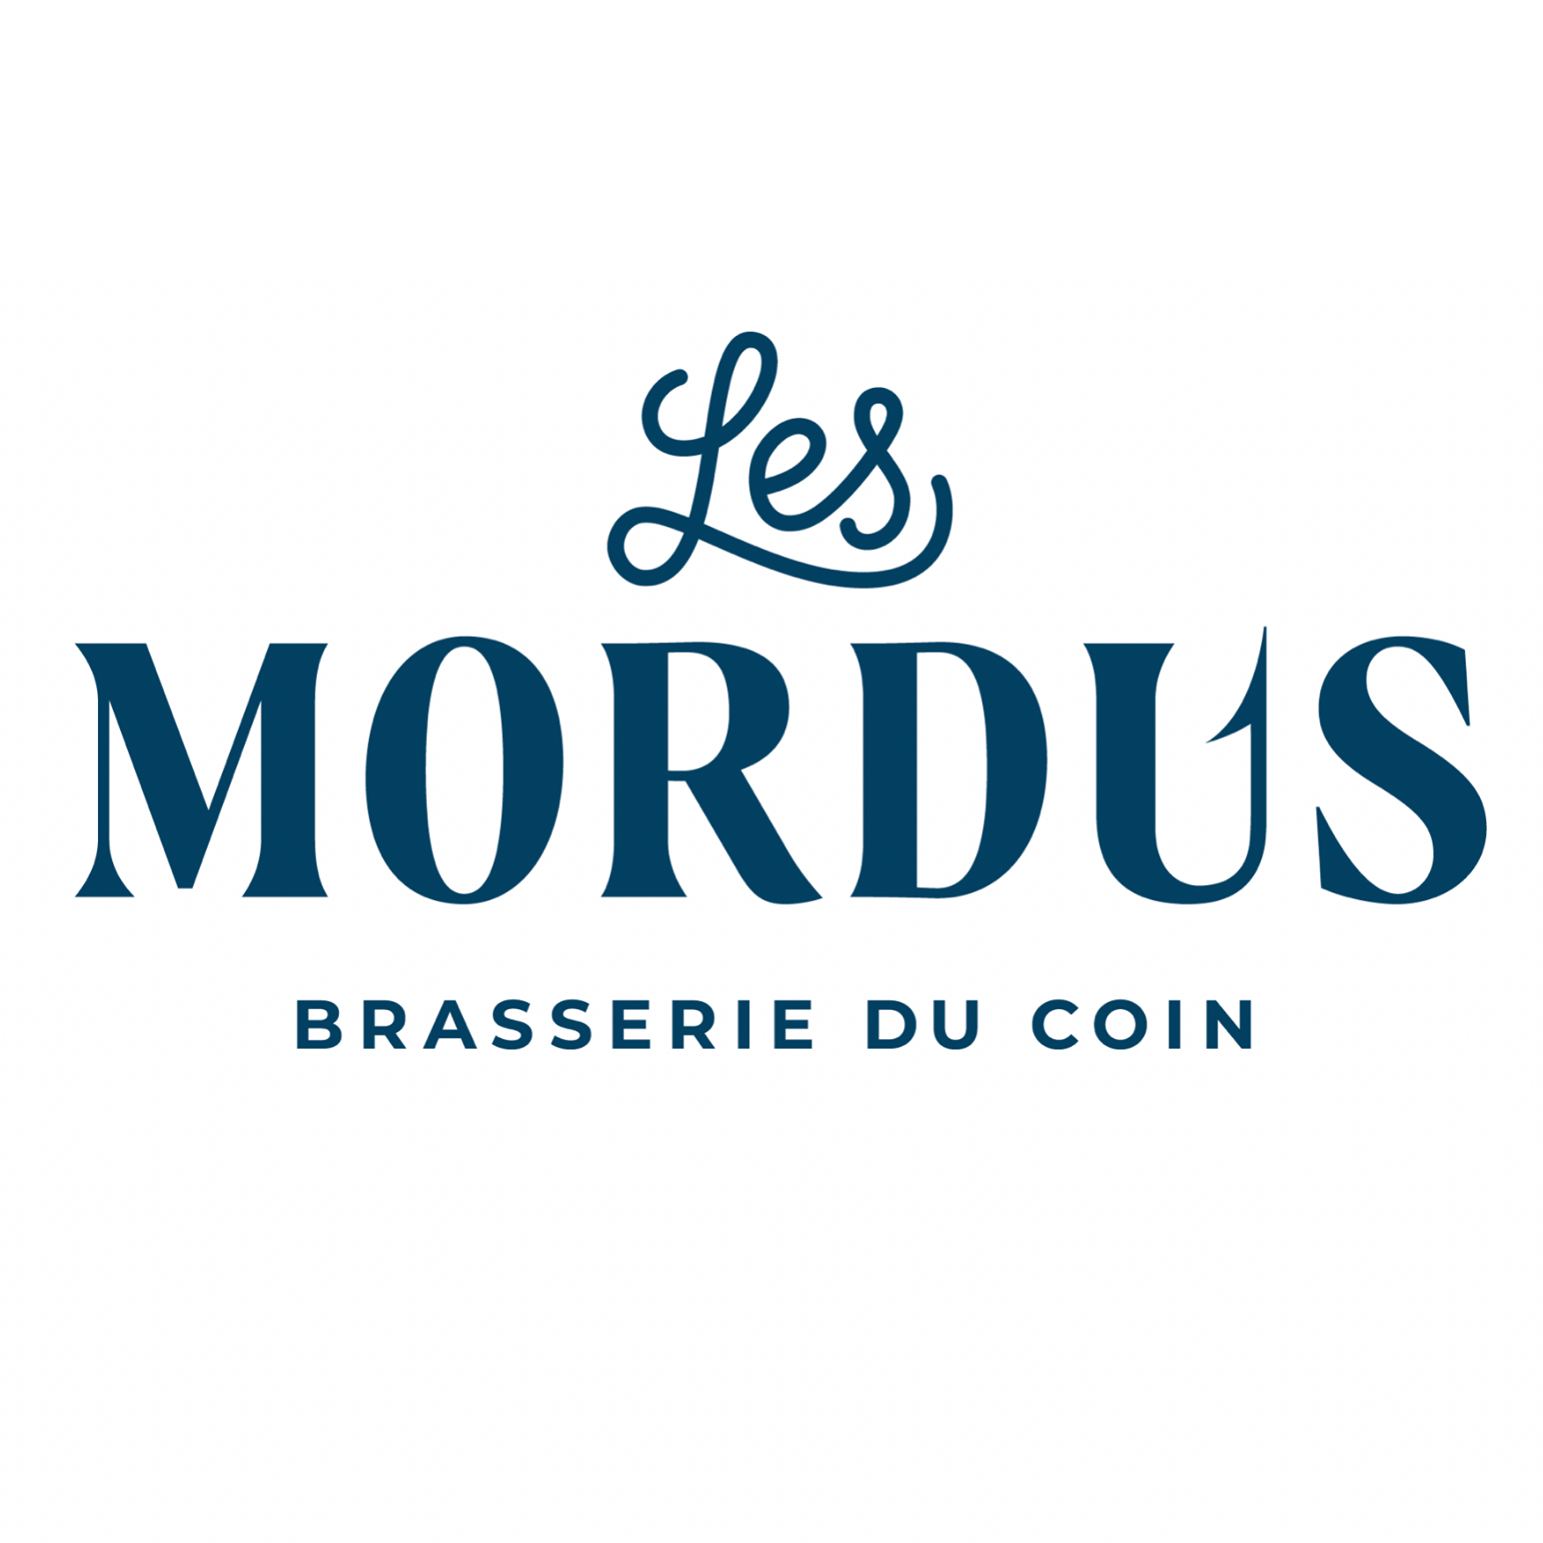 Brasserie Les Mordus